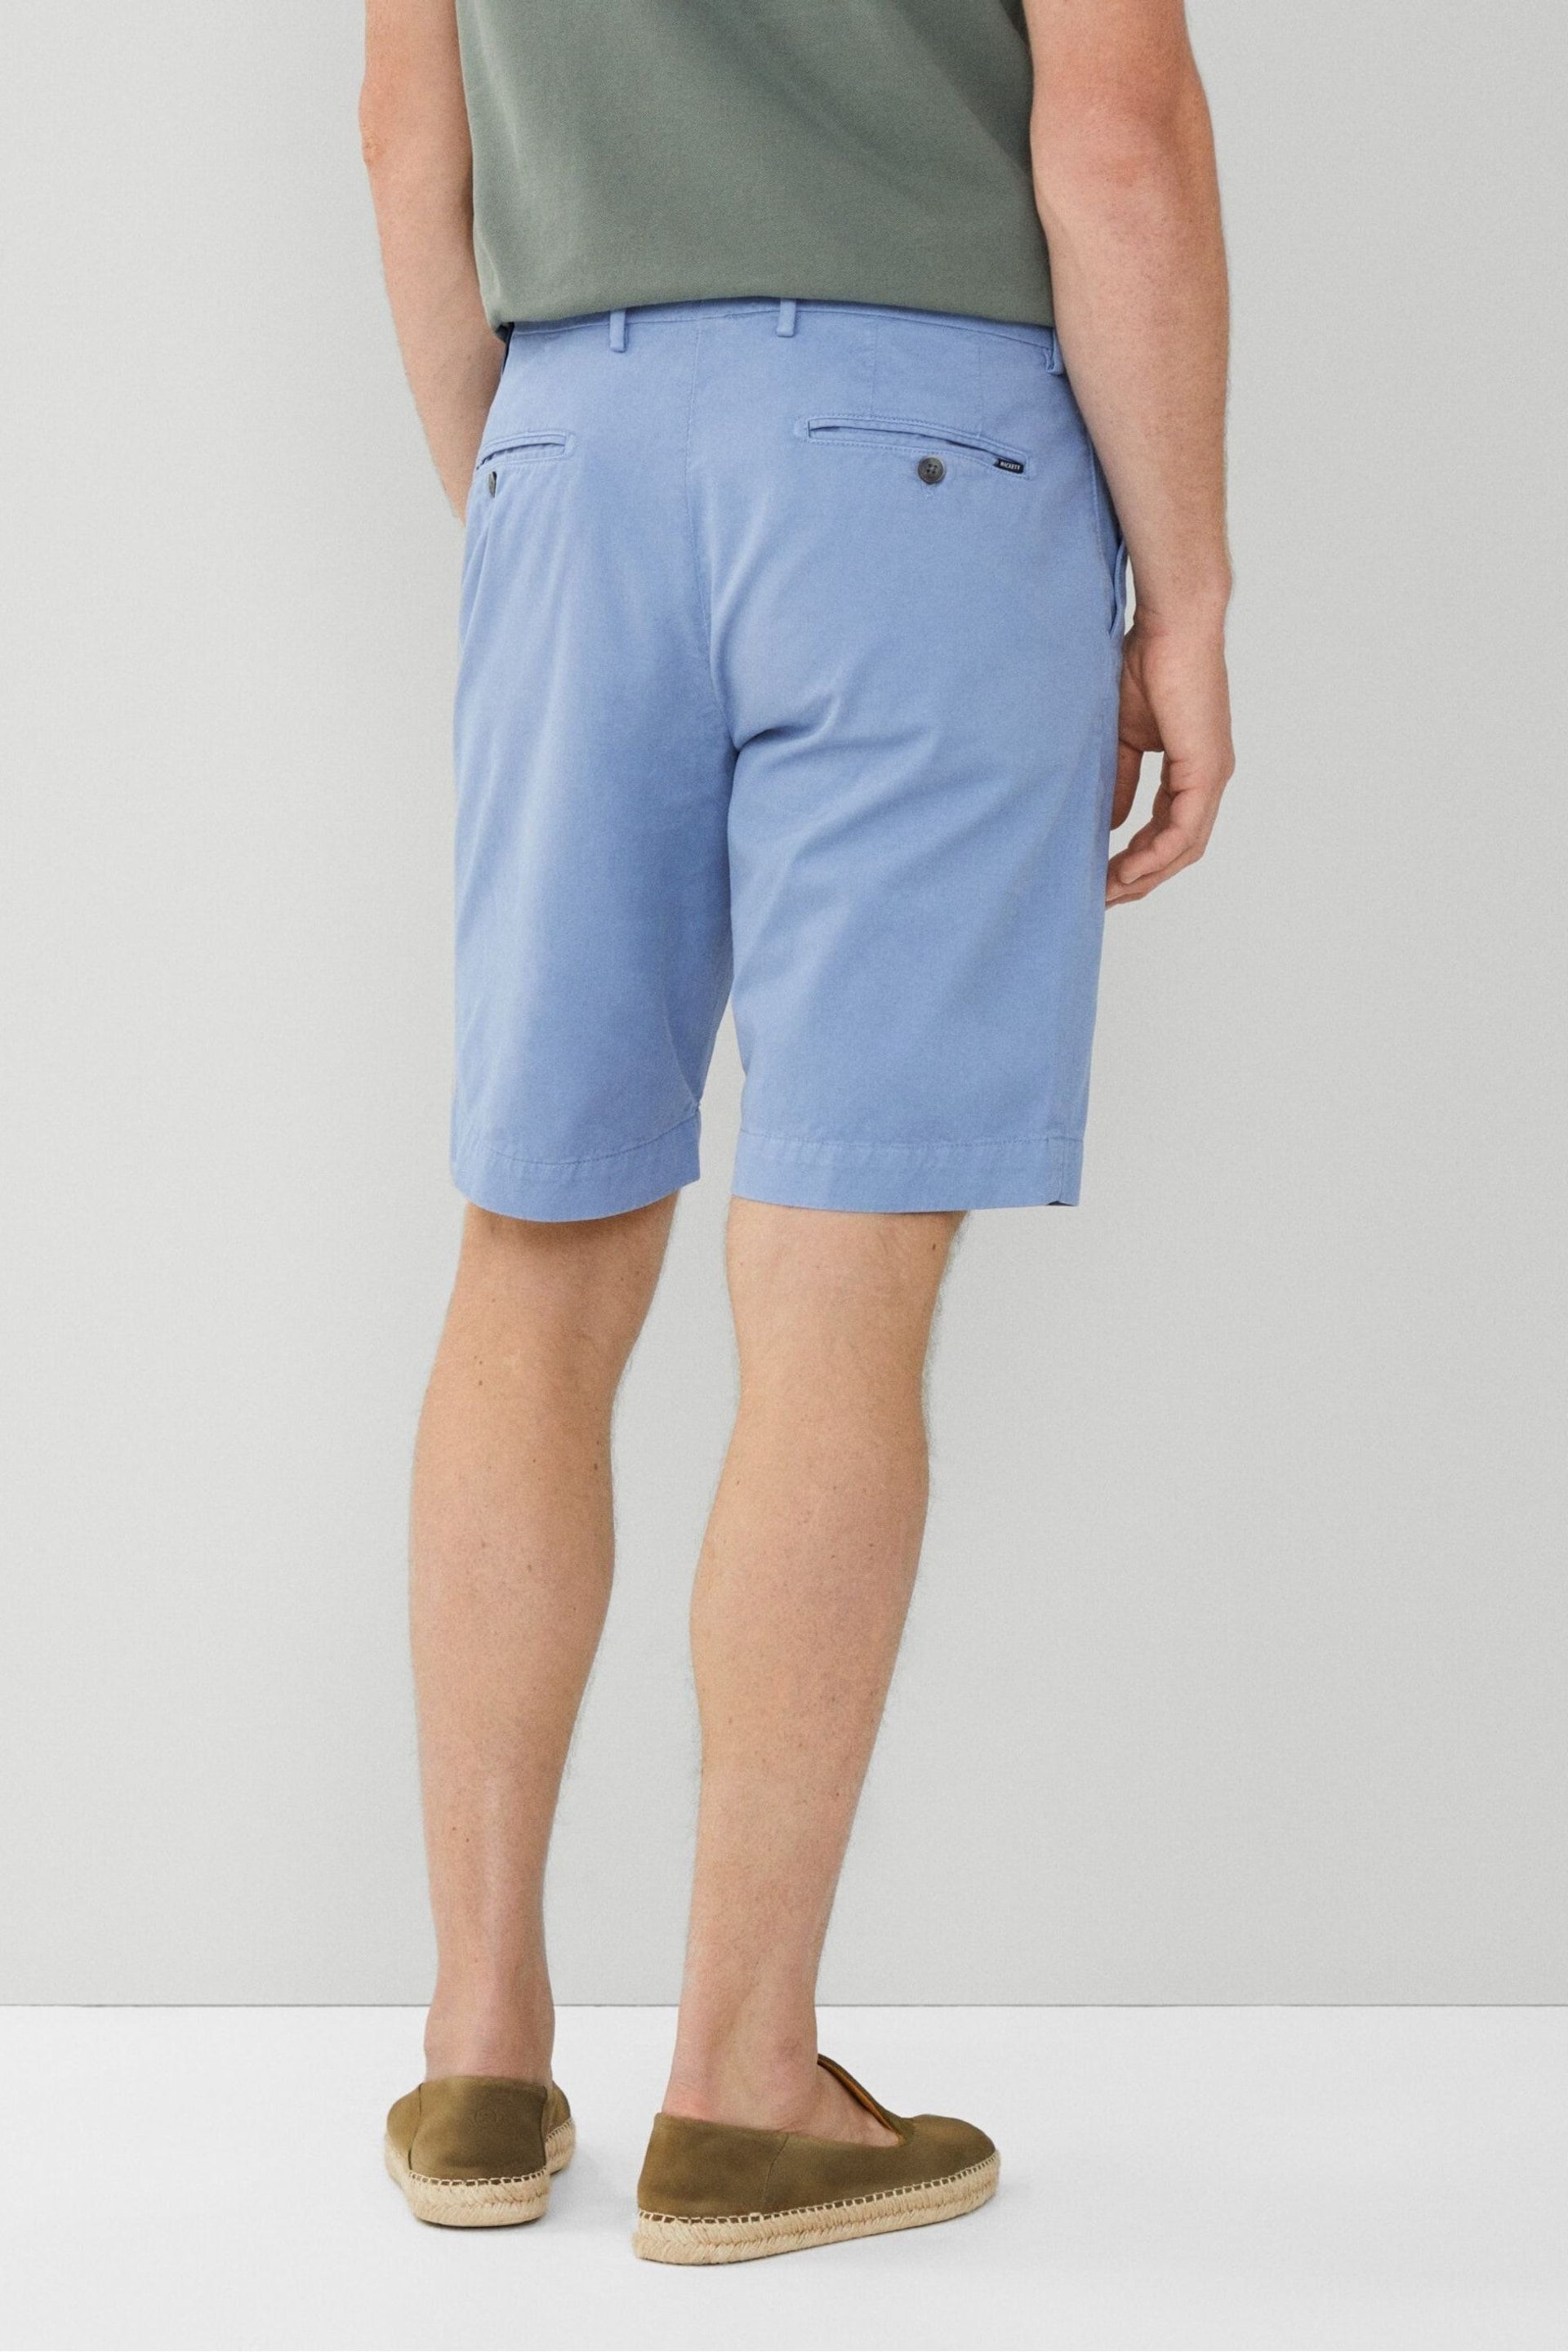 Hackett London Men Blue Shorts - Image 2 of 5